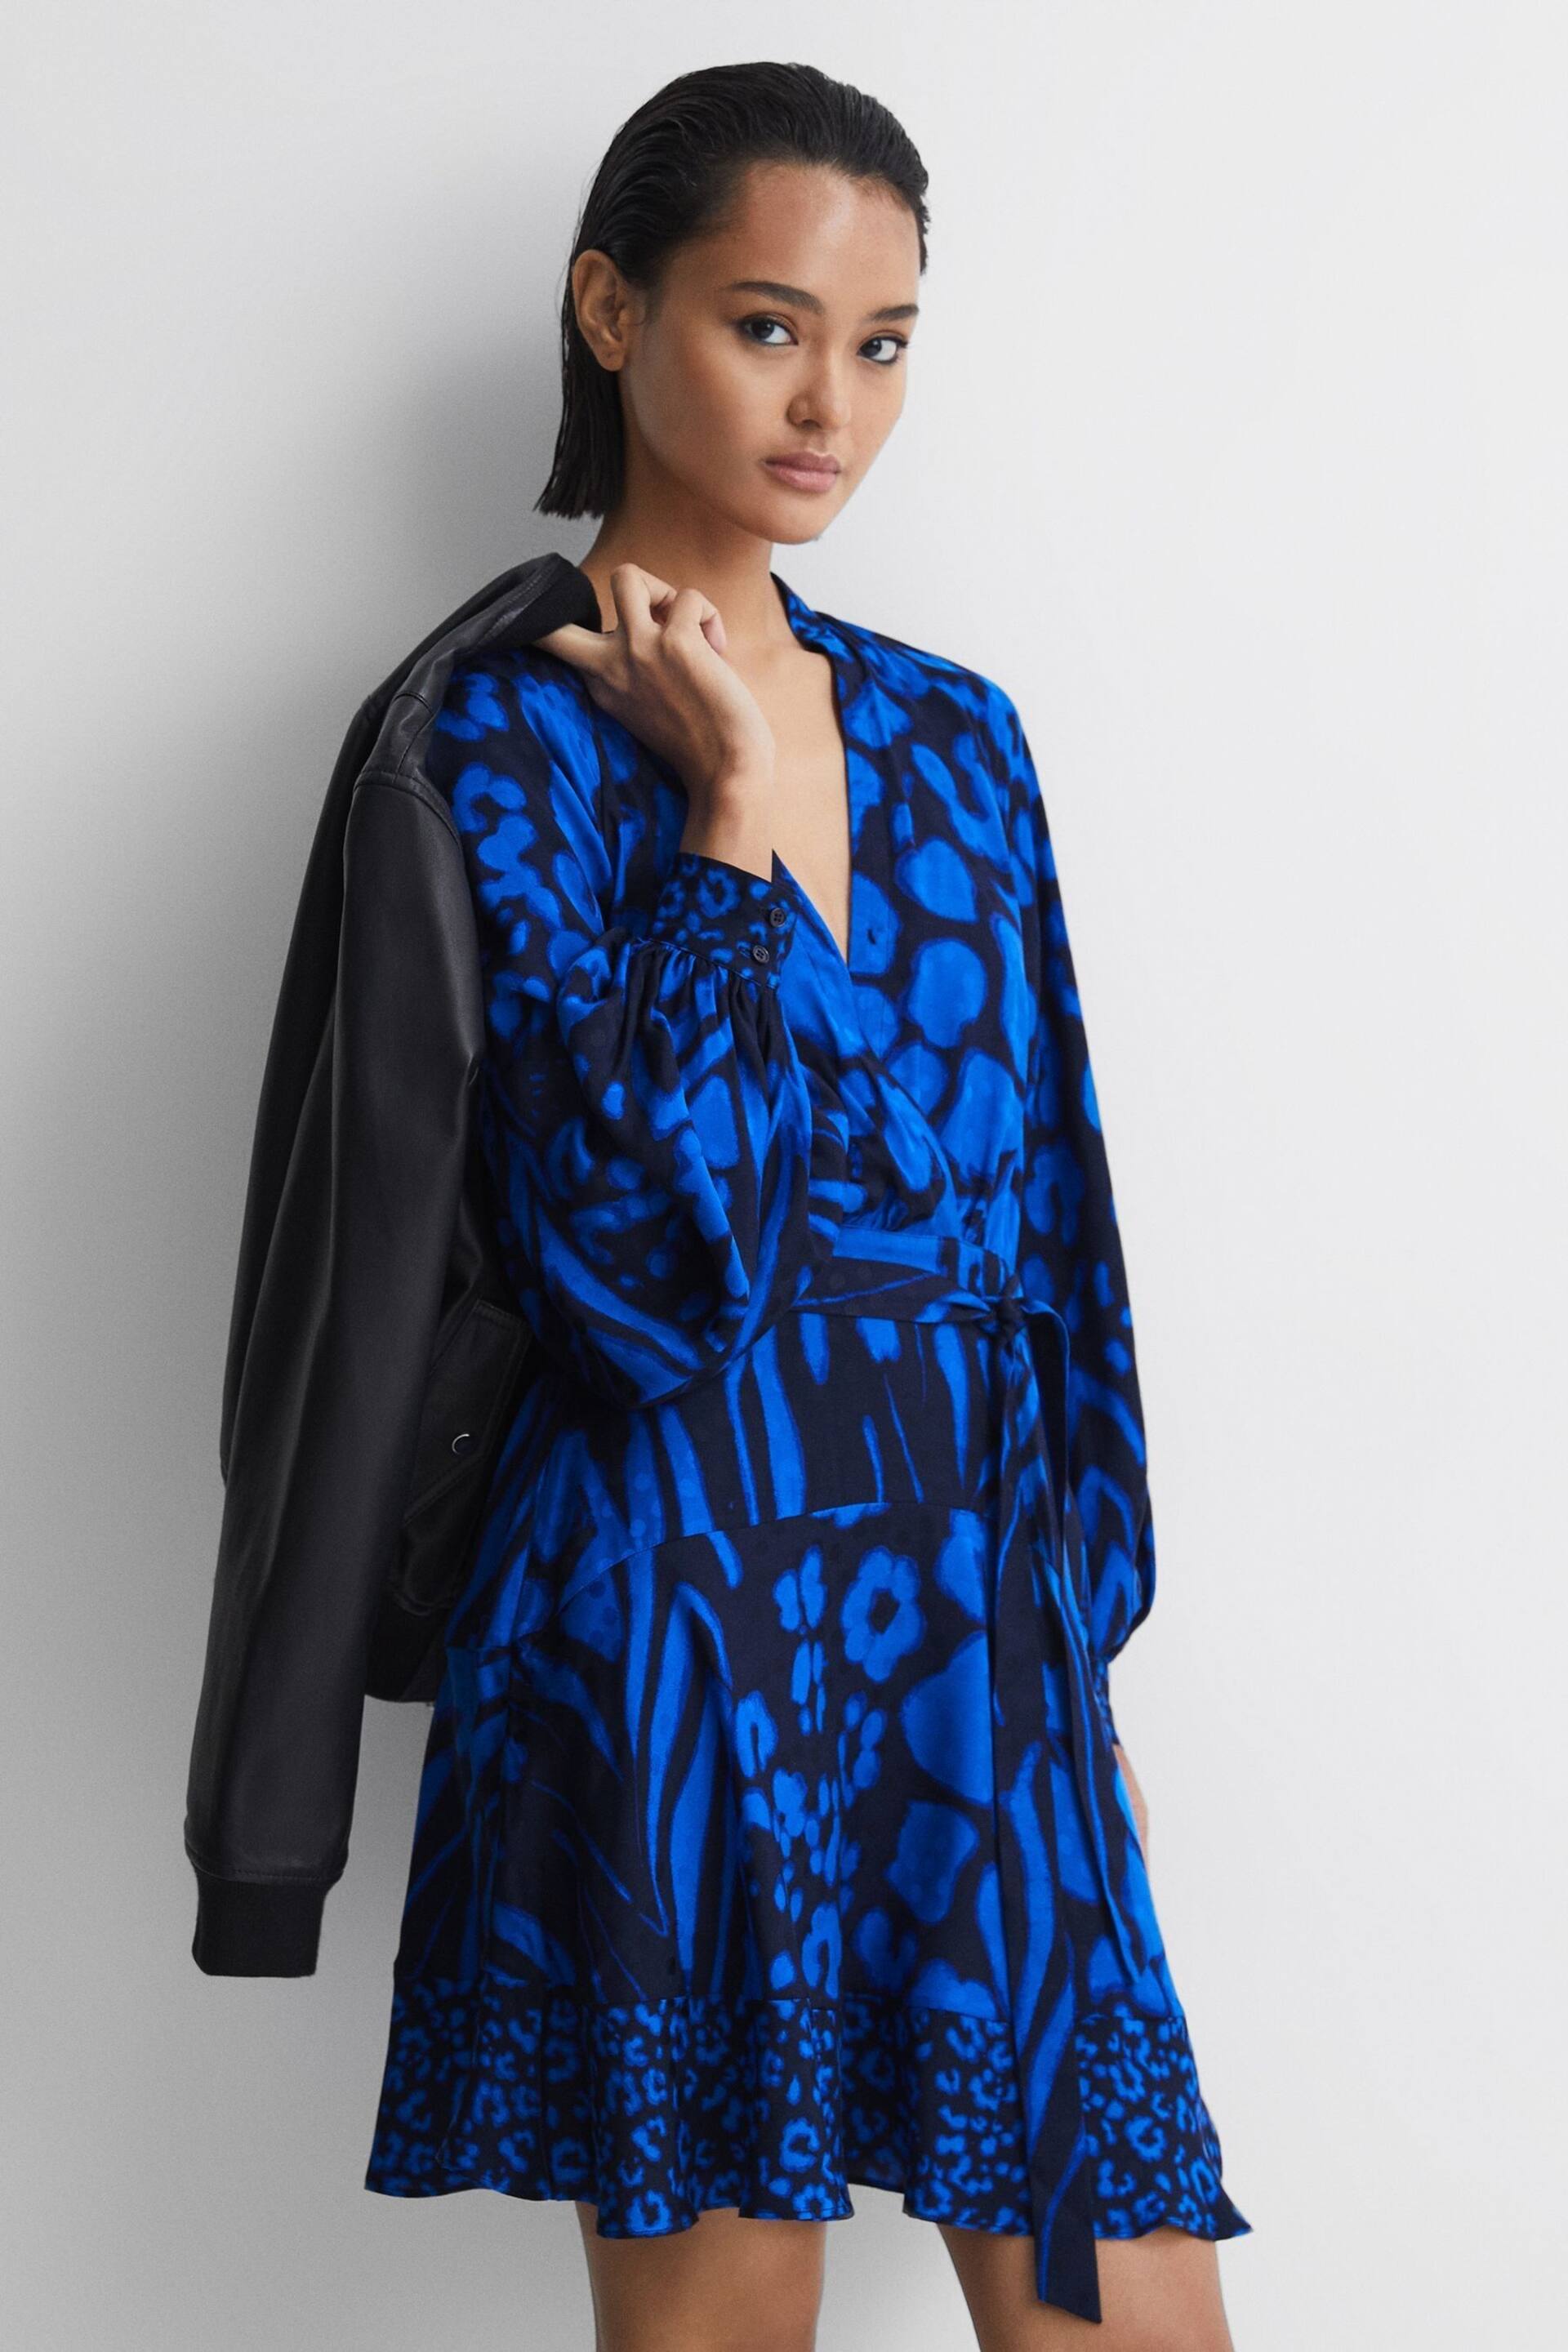 Reiss Blue/Navy Kerri Printed Blouson Sleeve Dress - Image 1 of 5